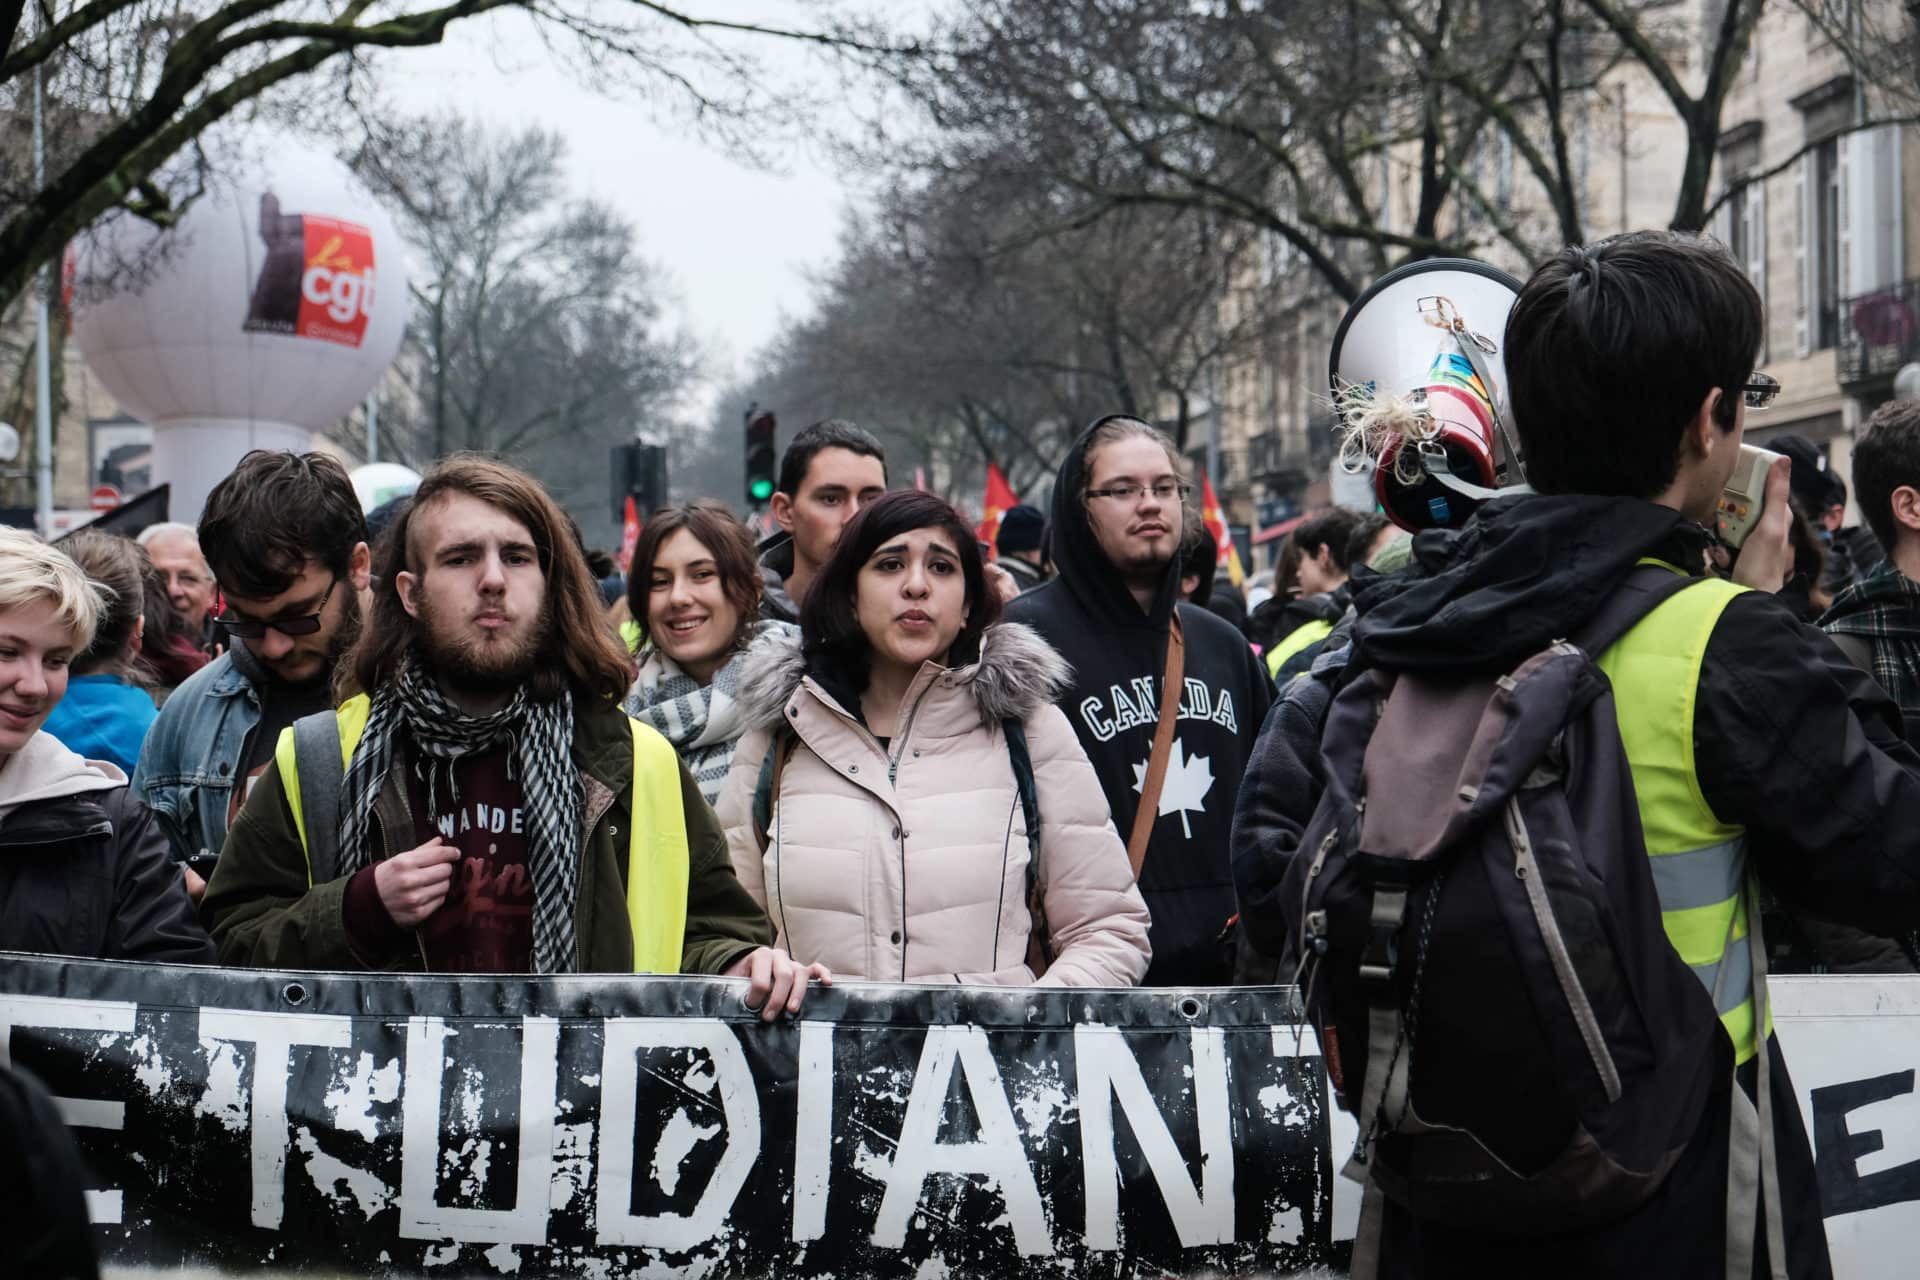 Etudiants, syndicalistes et Gilets jaunes ont manifesté par milliers à Bordeaux